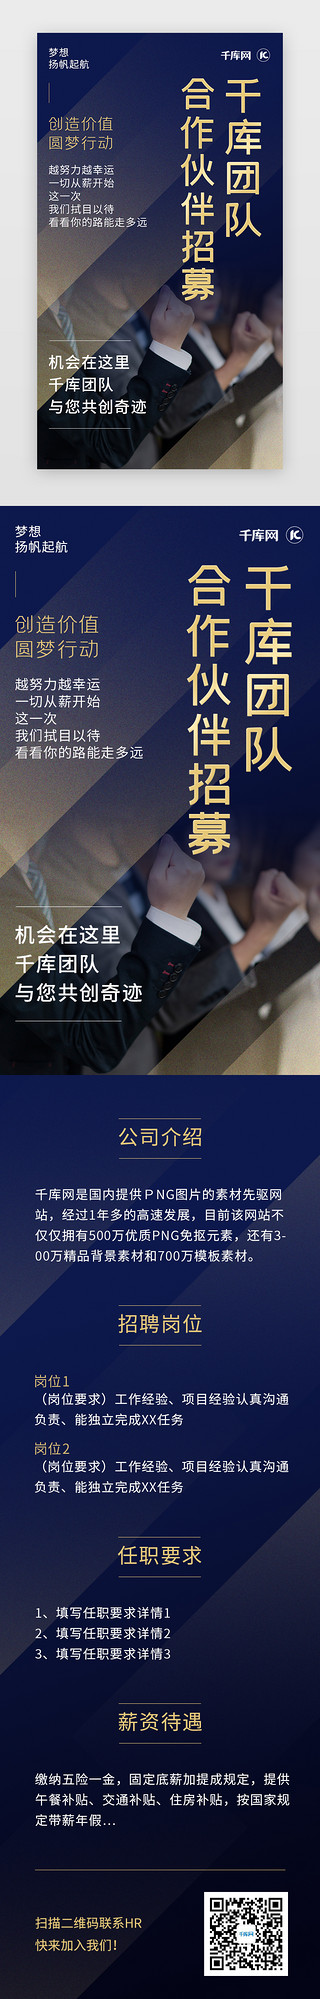 青稞酒公司UI设计素材_蓝金色公司企业招募招聘H5